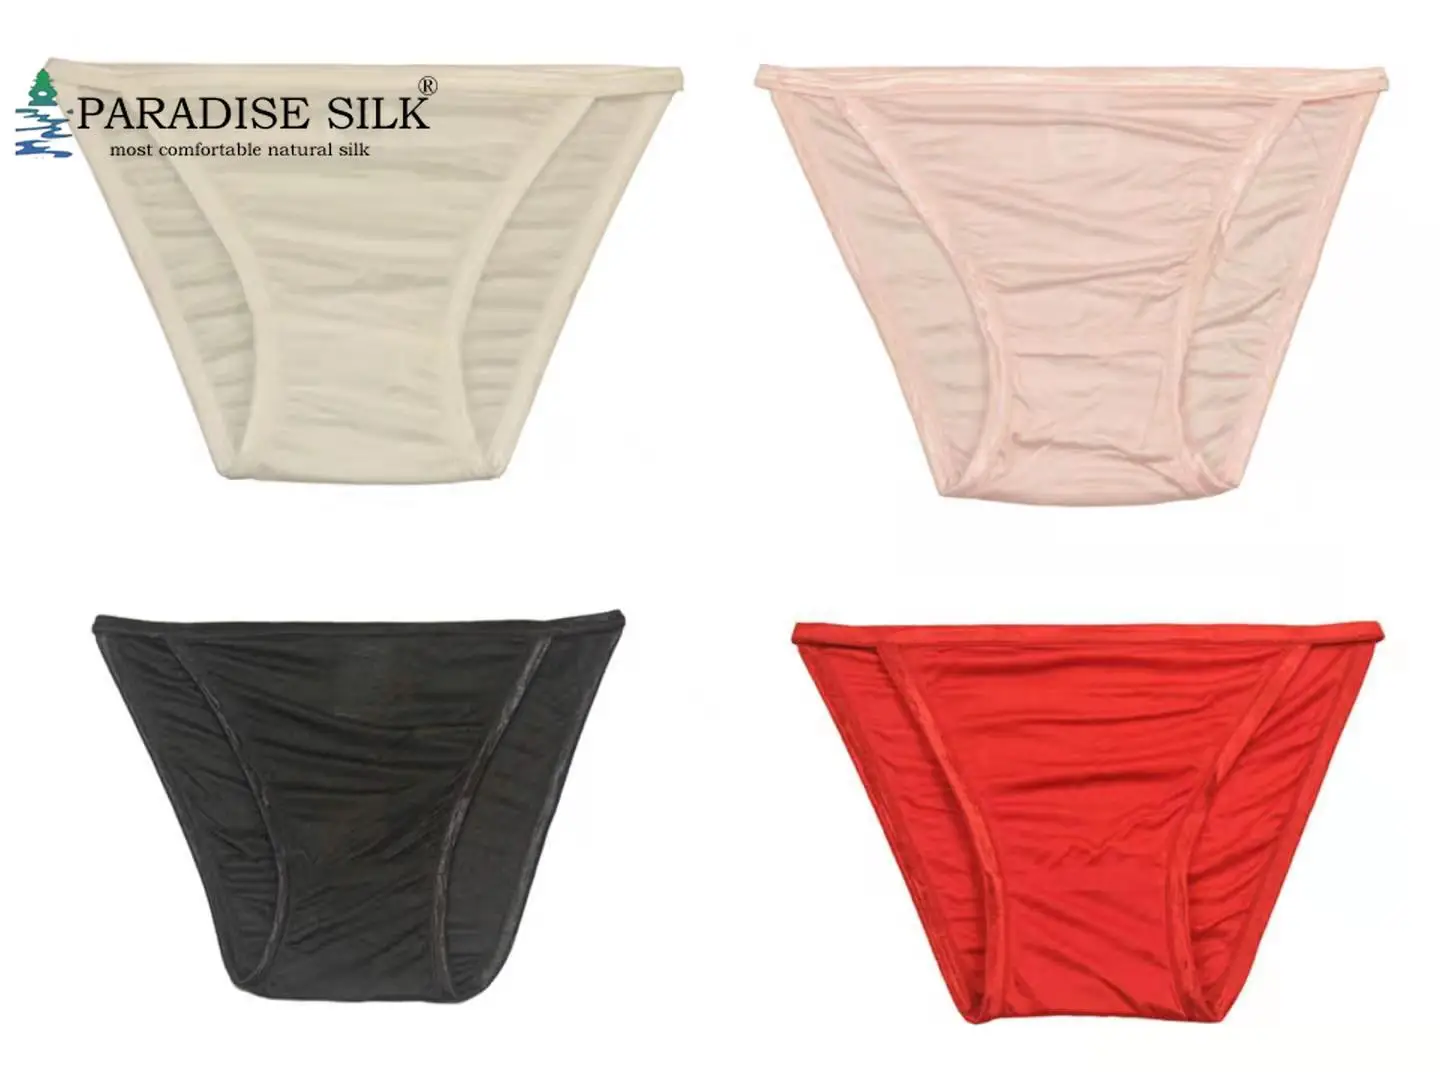 Paradise Silk Pure Silk Knit String Bikini Panties 